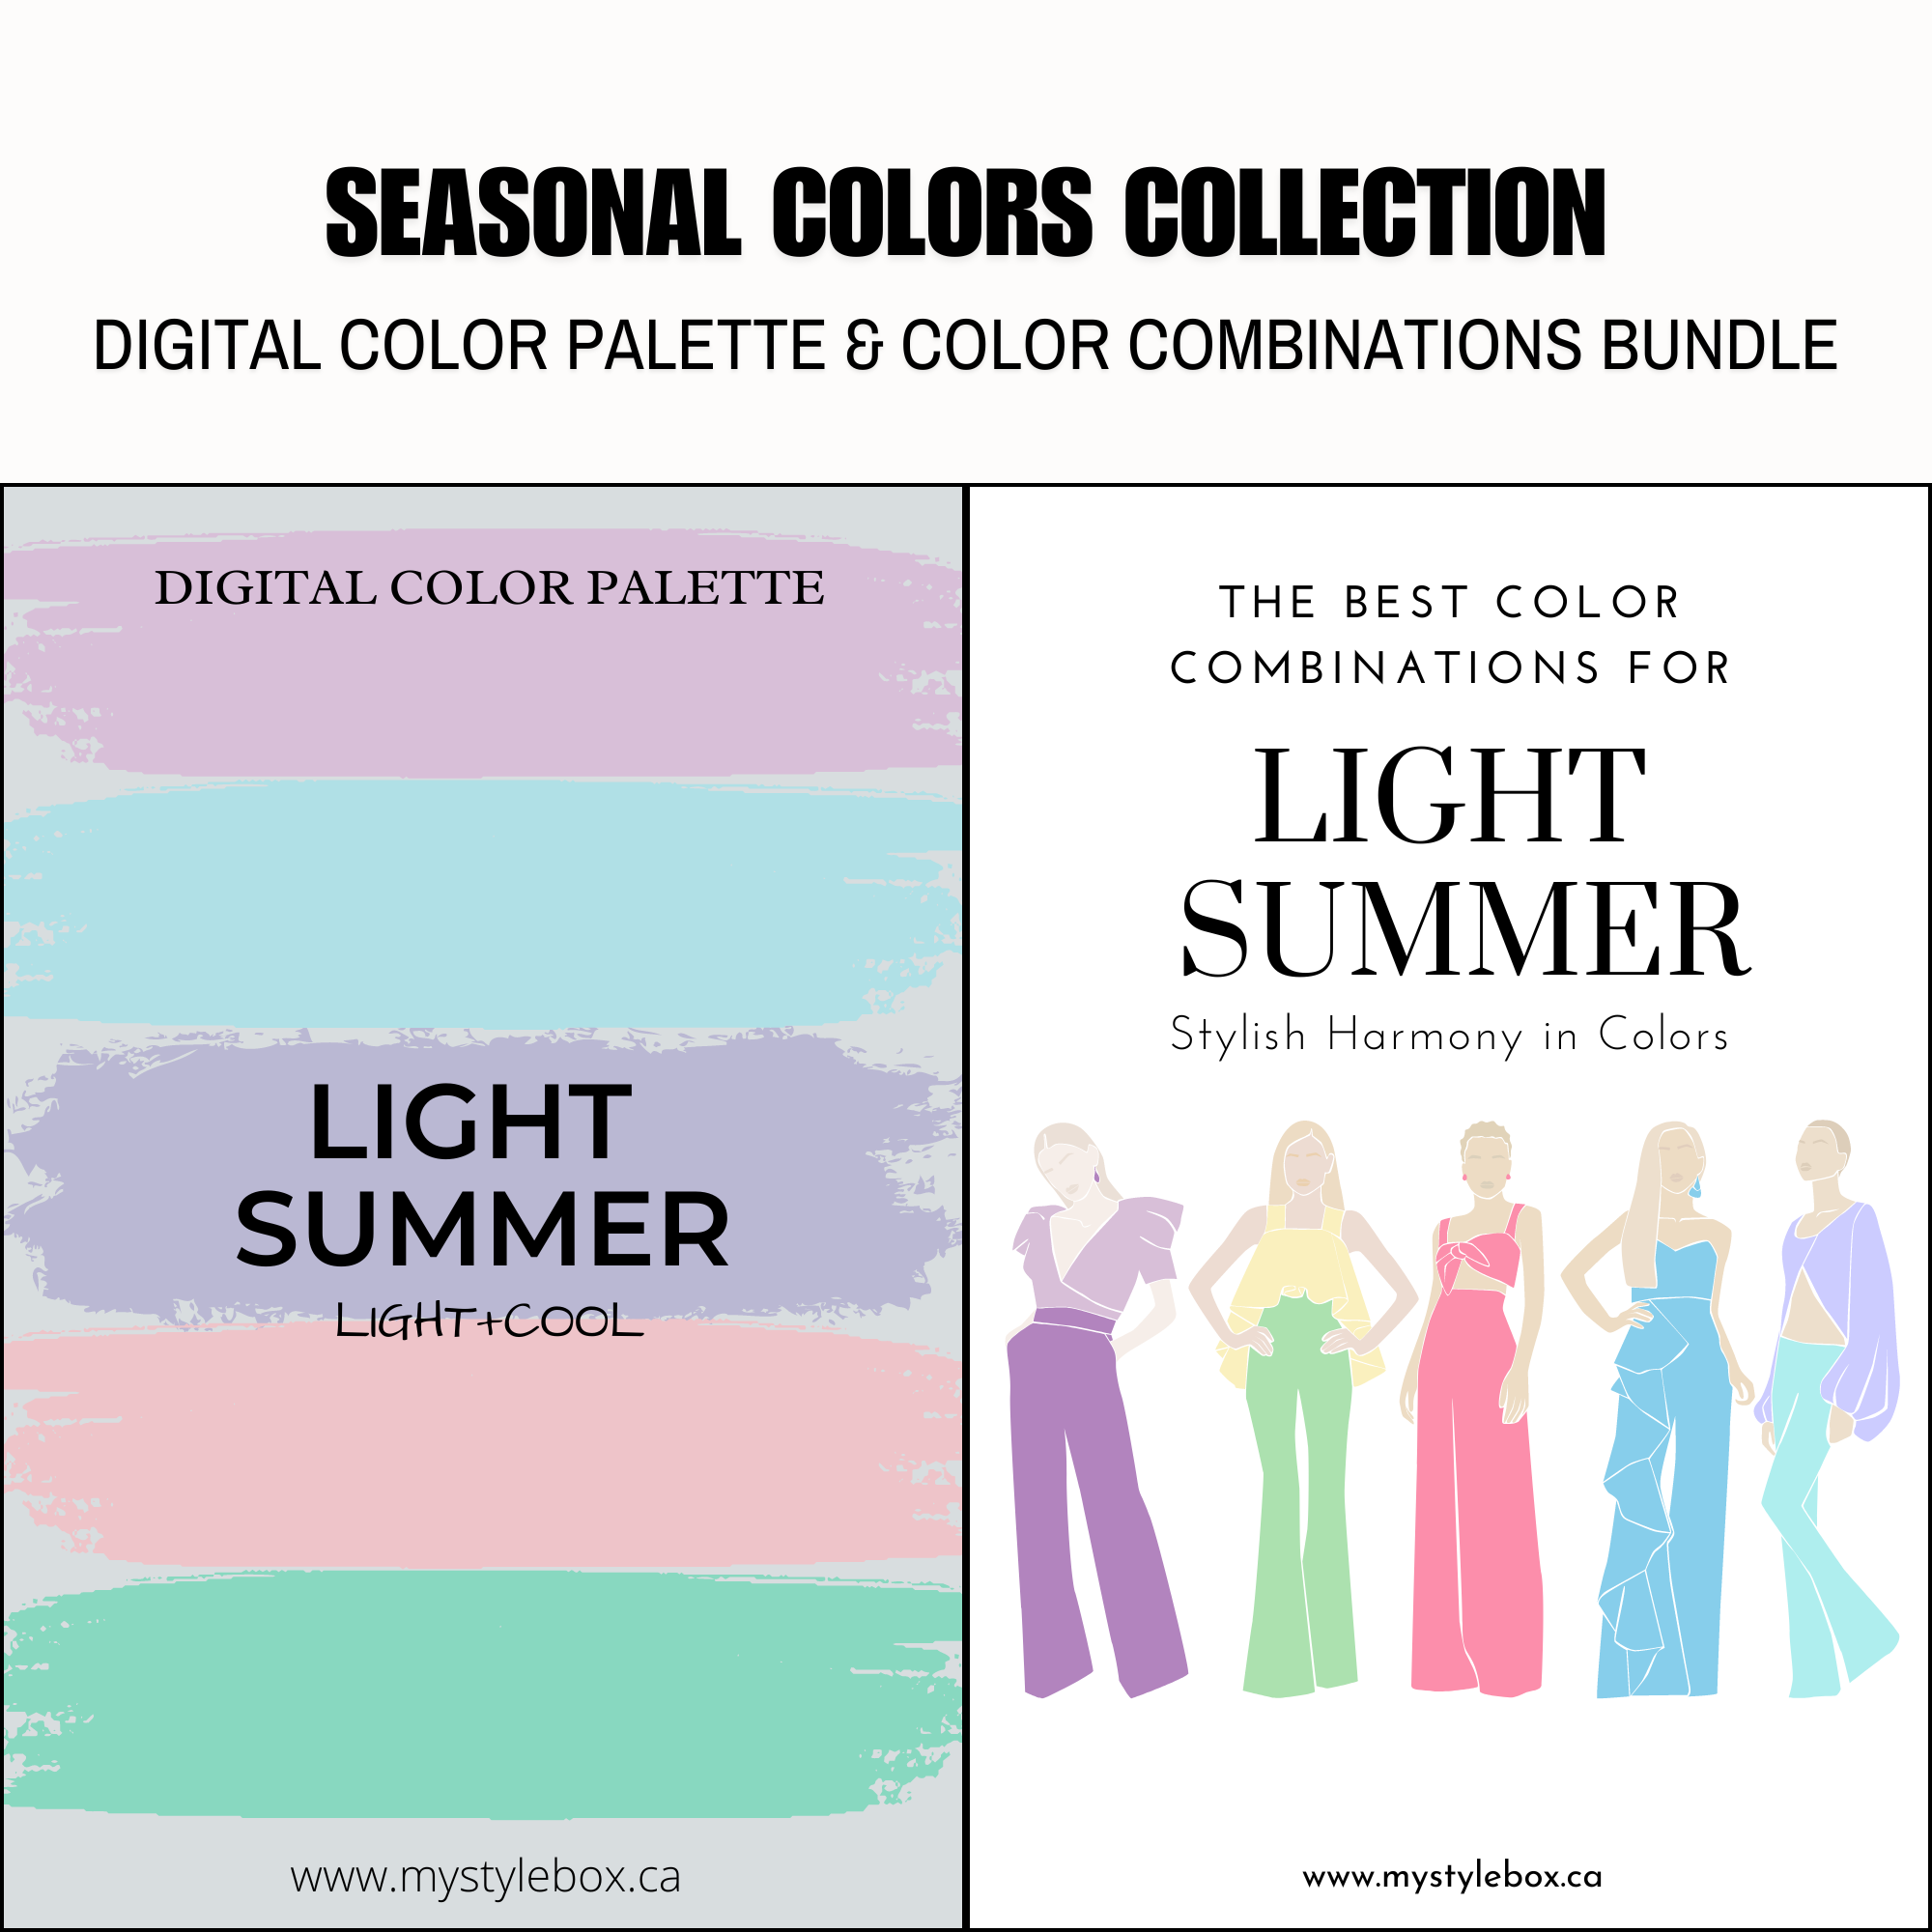 Paquete de combinaciones de colores y paleta de colores digitales Light Summer Season